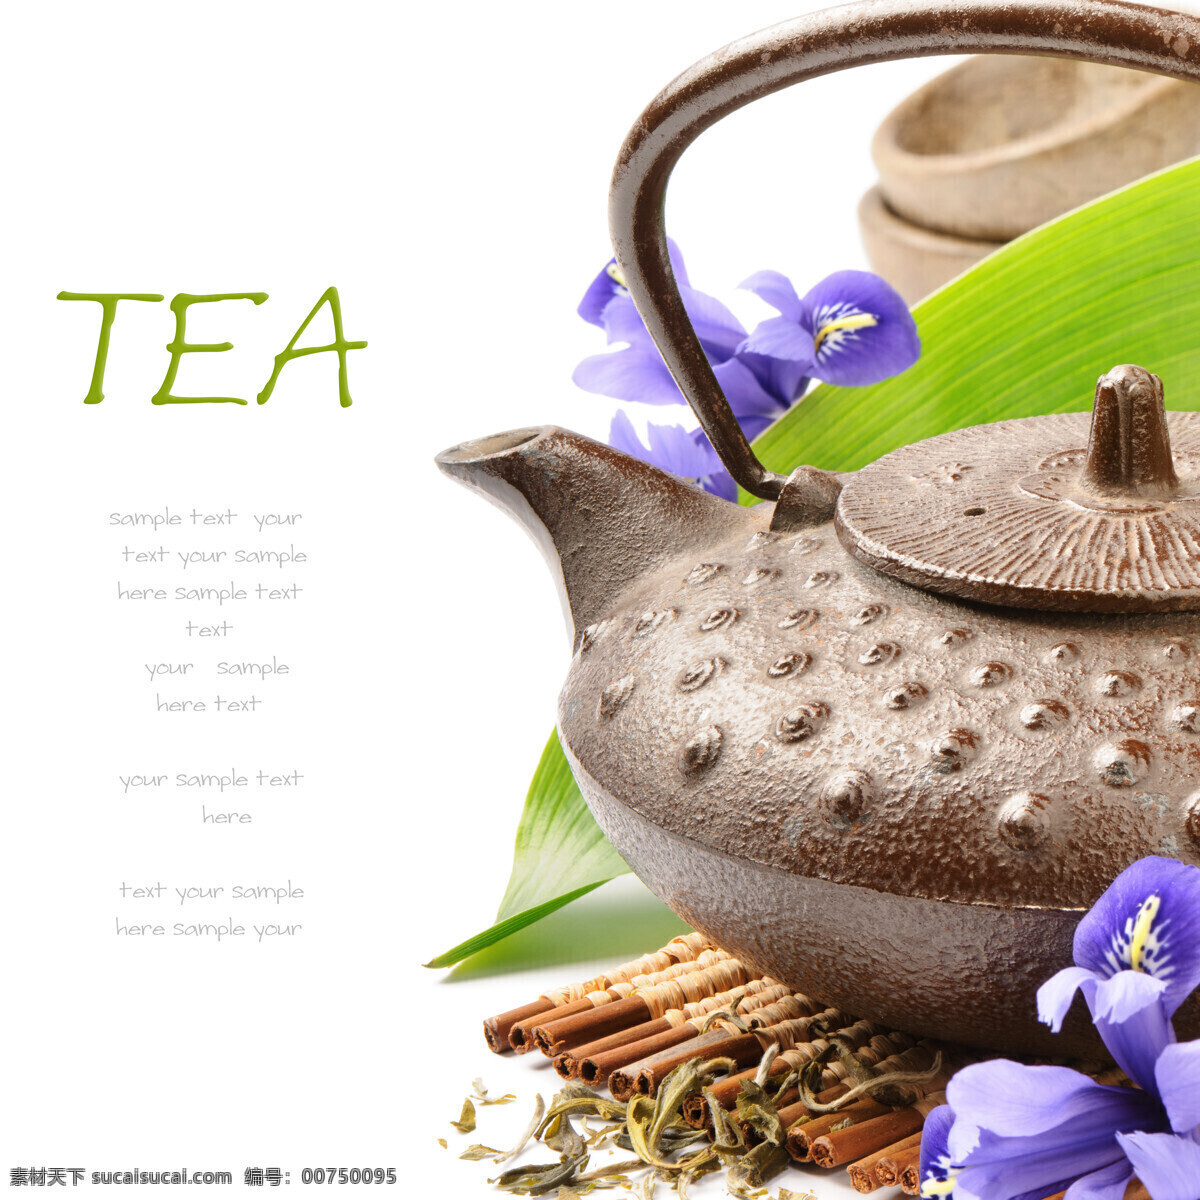 茶壶 花朵 背景图片 鲜花 茶叶 生活百科 其他类别 餐饮美食 白色